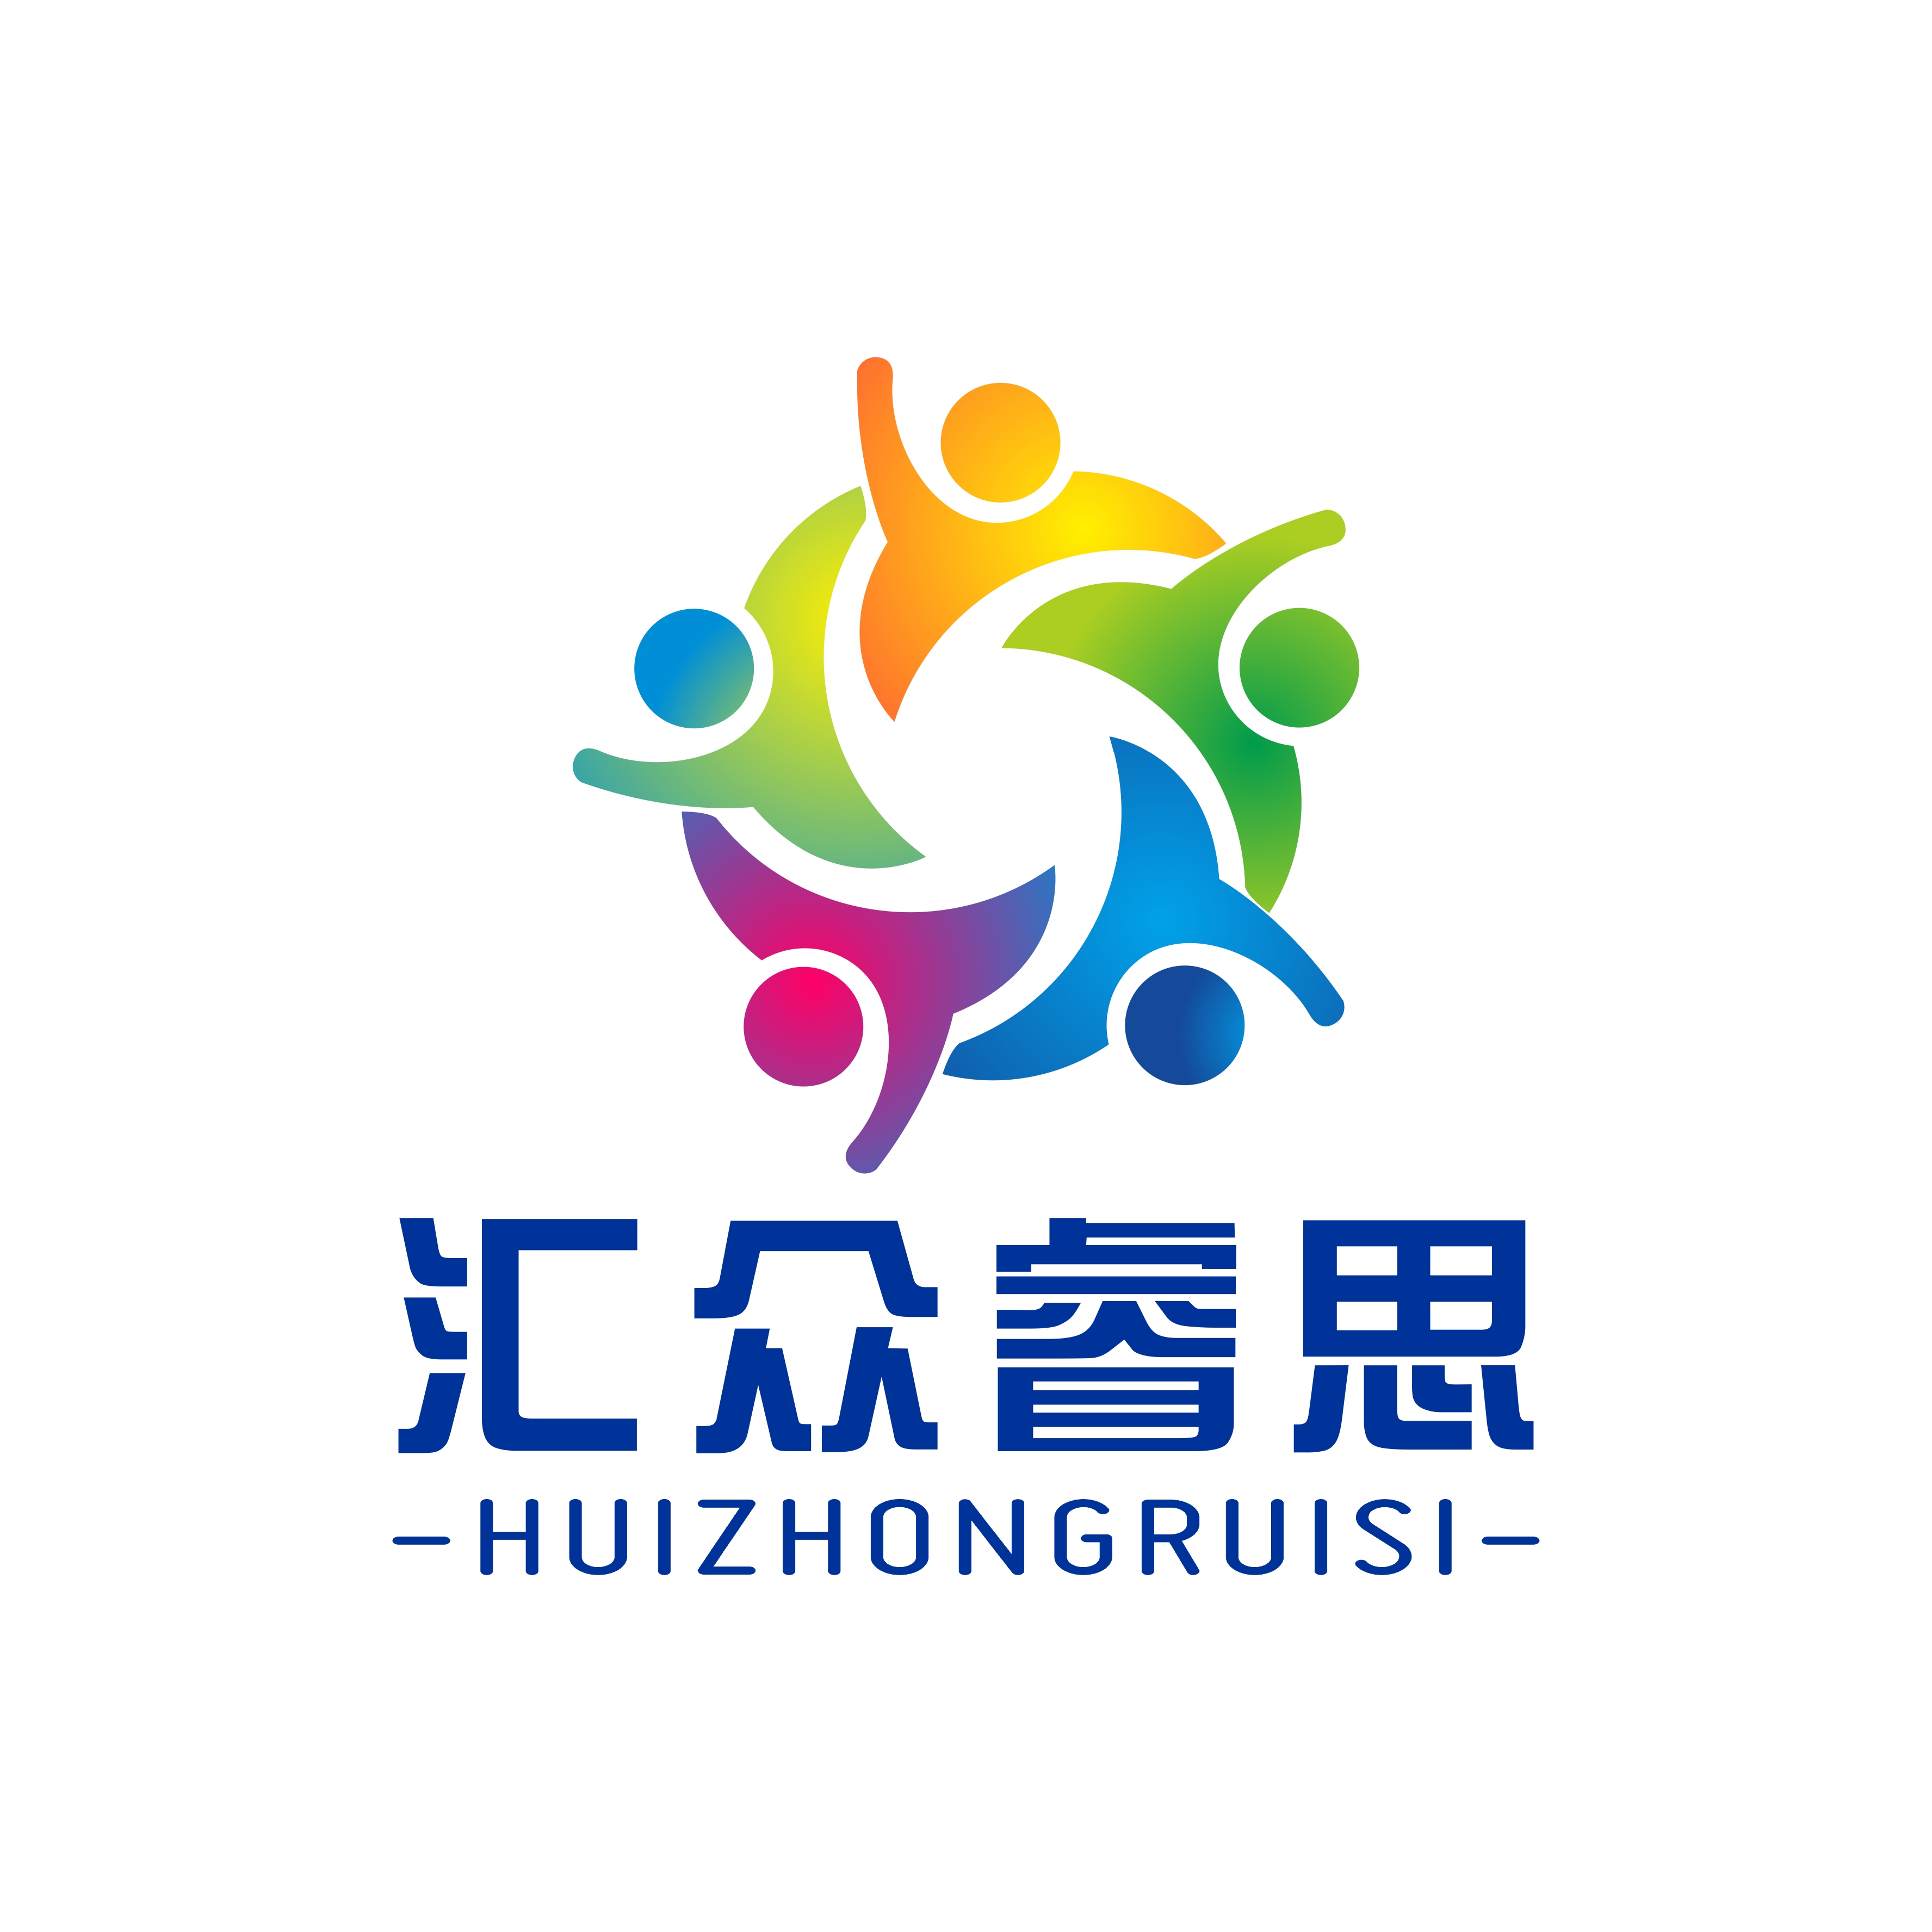 Huizhongrs